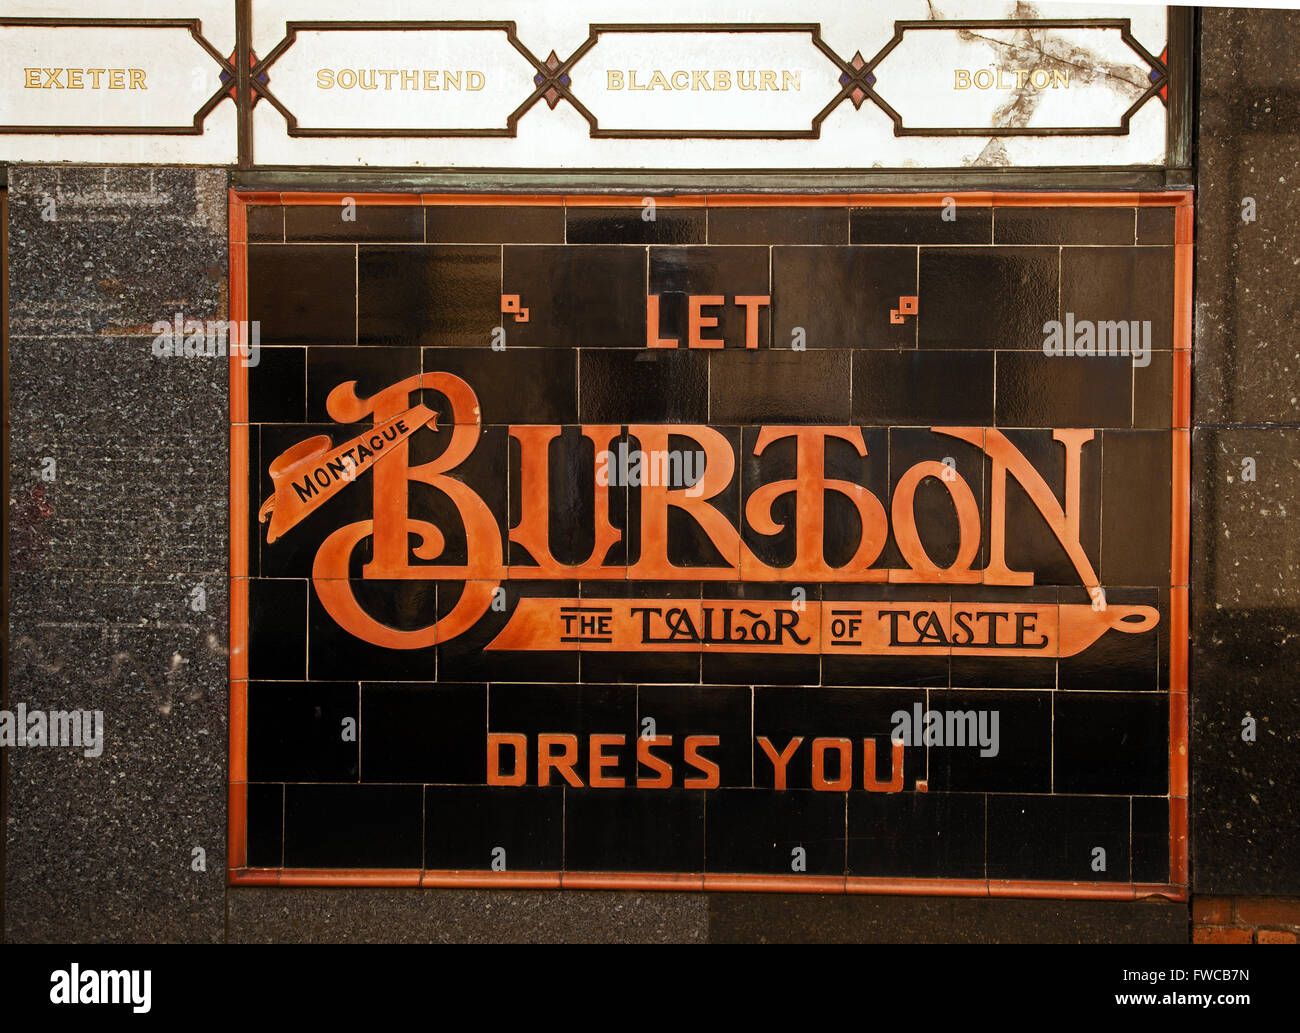 Publicité pour Burton l'tailleur dans des tuiles sur le mur de leur boutique à Abergavenny au Pays de Galles Banque D'Images